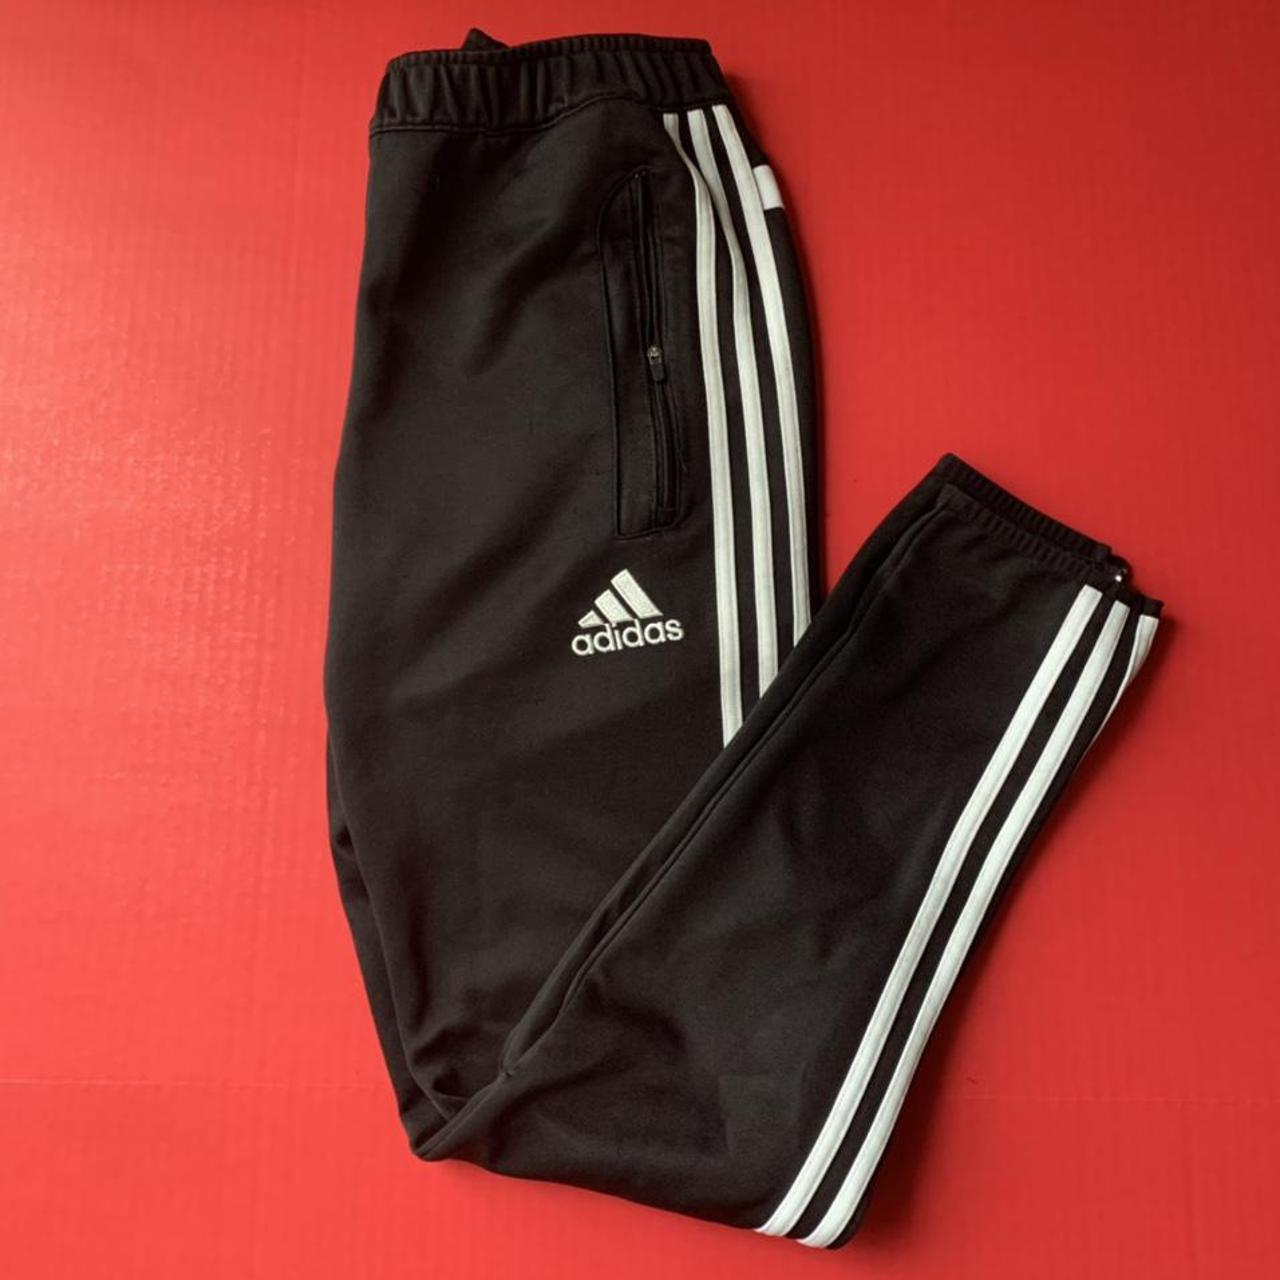 Adidas jogging pants. Has zipper pockets and zippers... - Depop